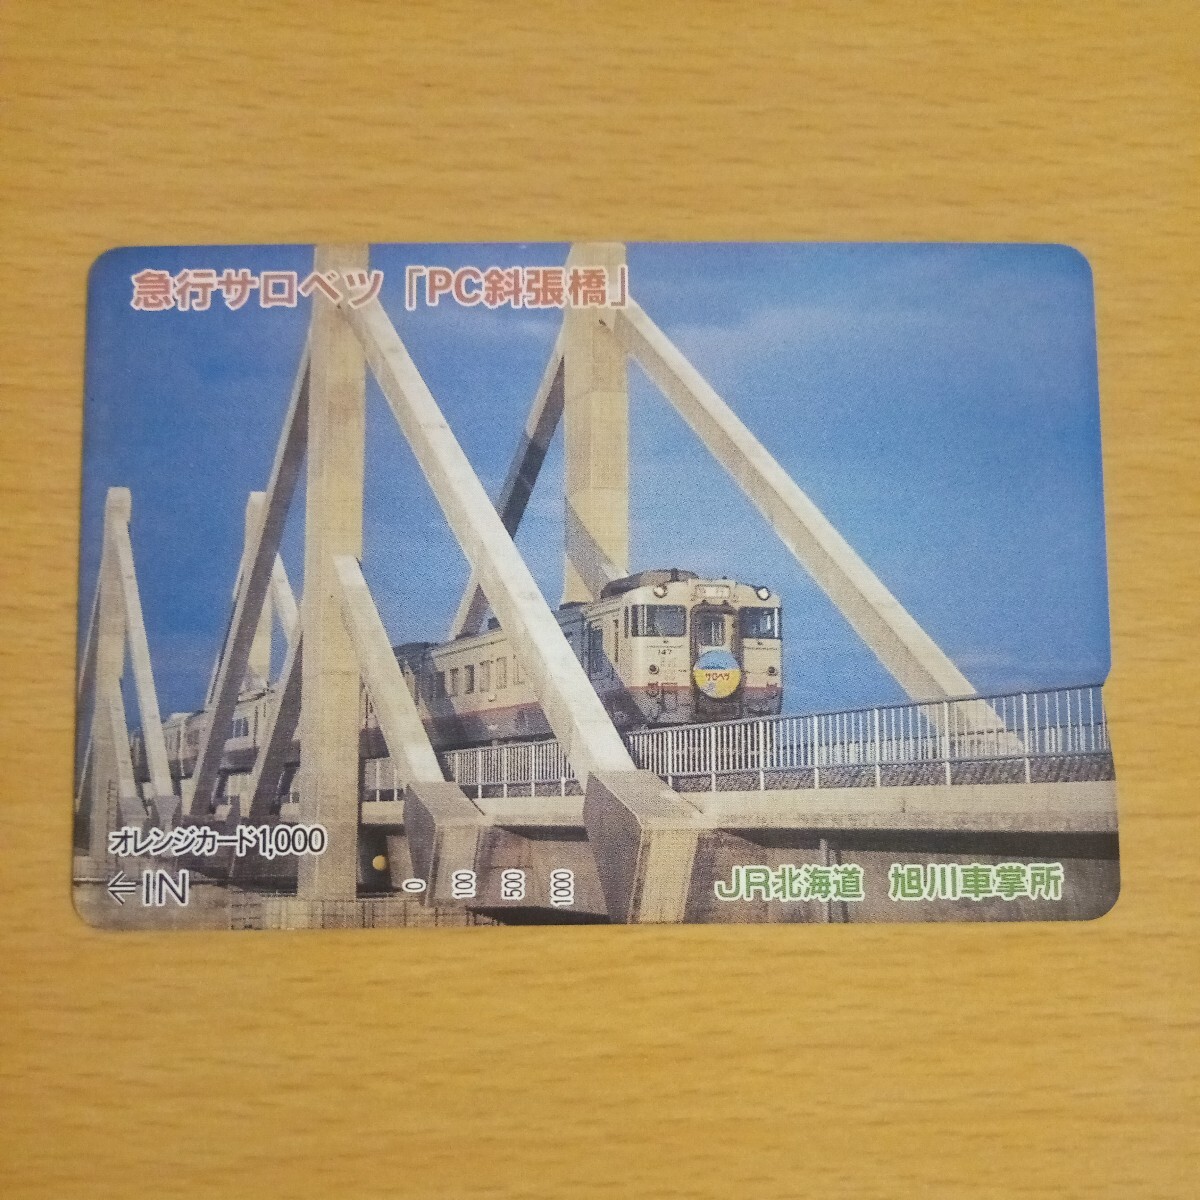 【1穴】使用済みオレンジカード JR北海道 急行サロベツ PC斜張橋 9910の画像1